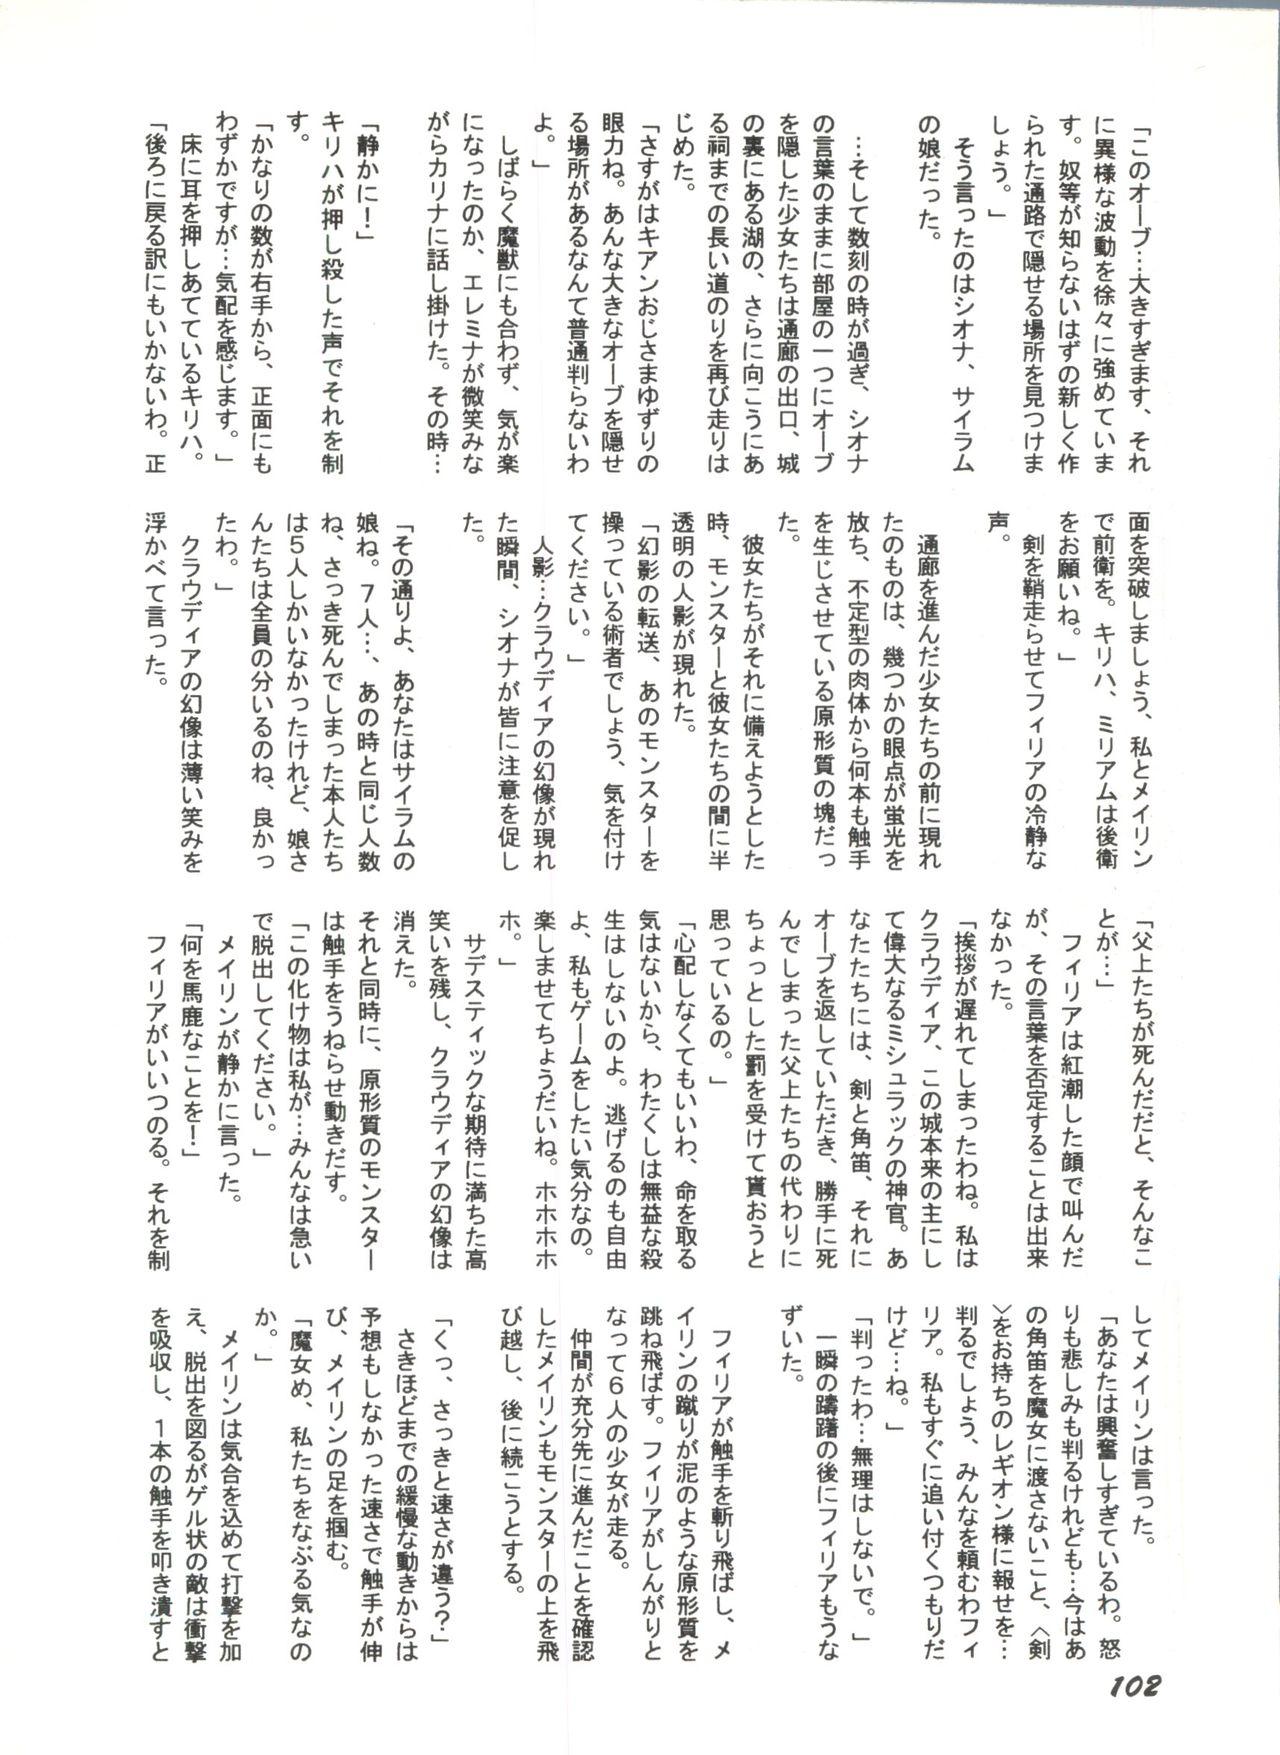 Bishoujo Doujinshi Anthology 1 103